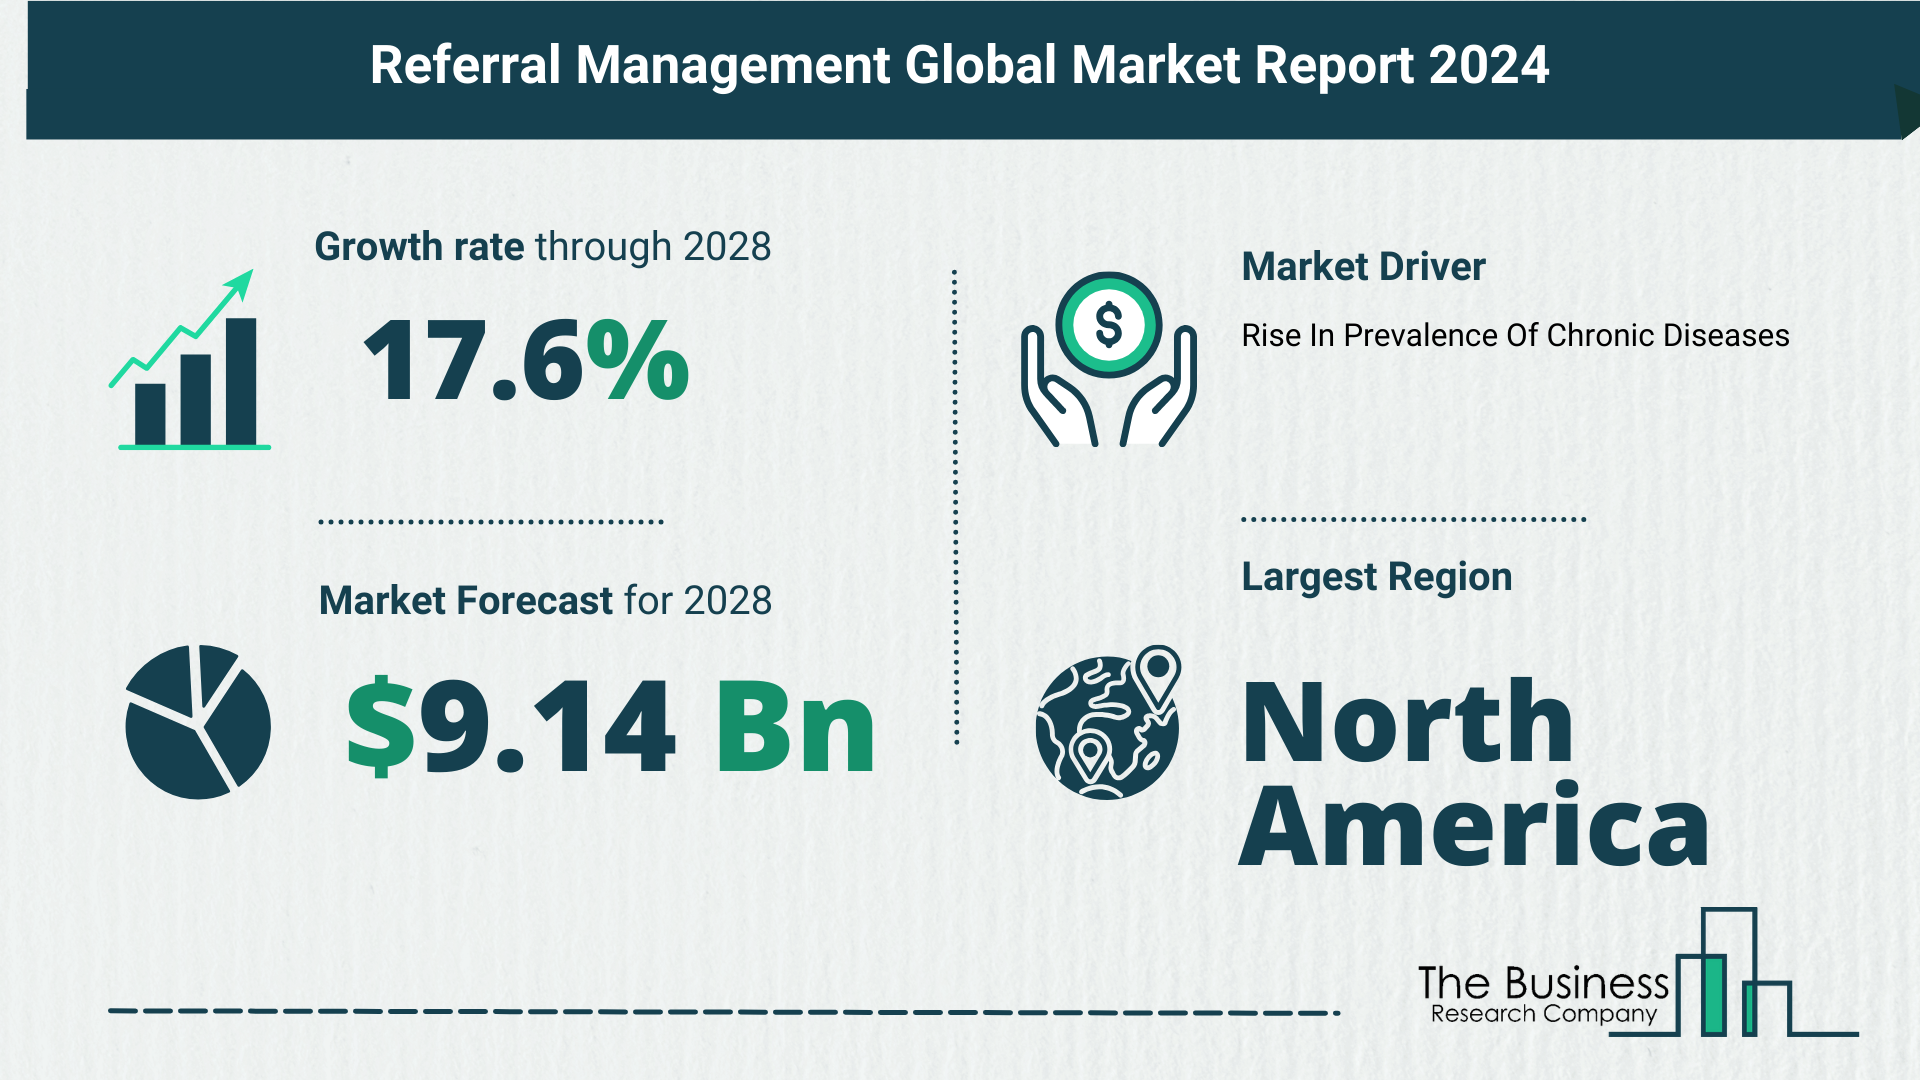 Global Referral Management Market